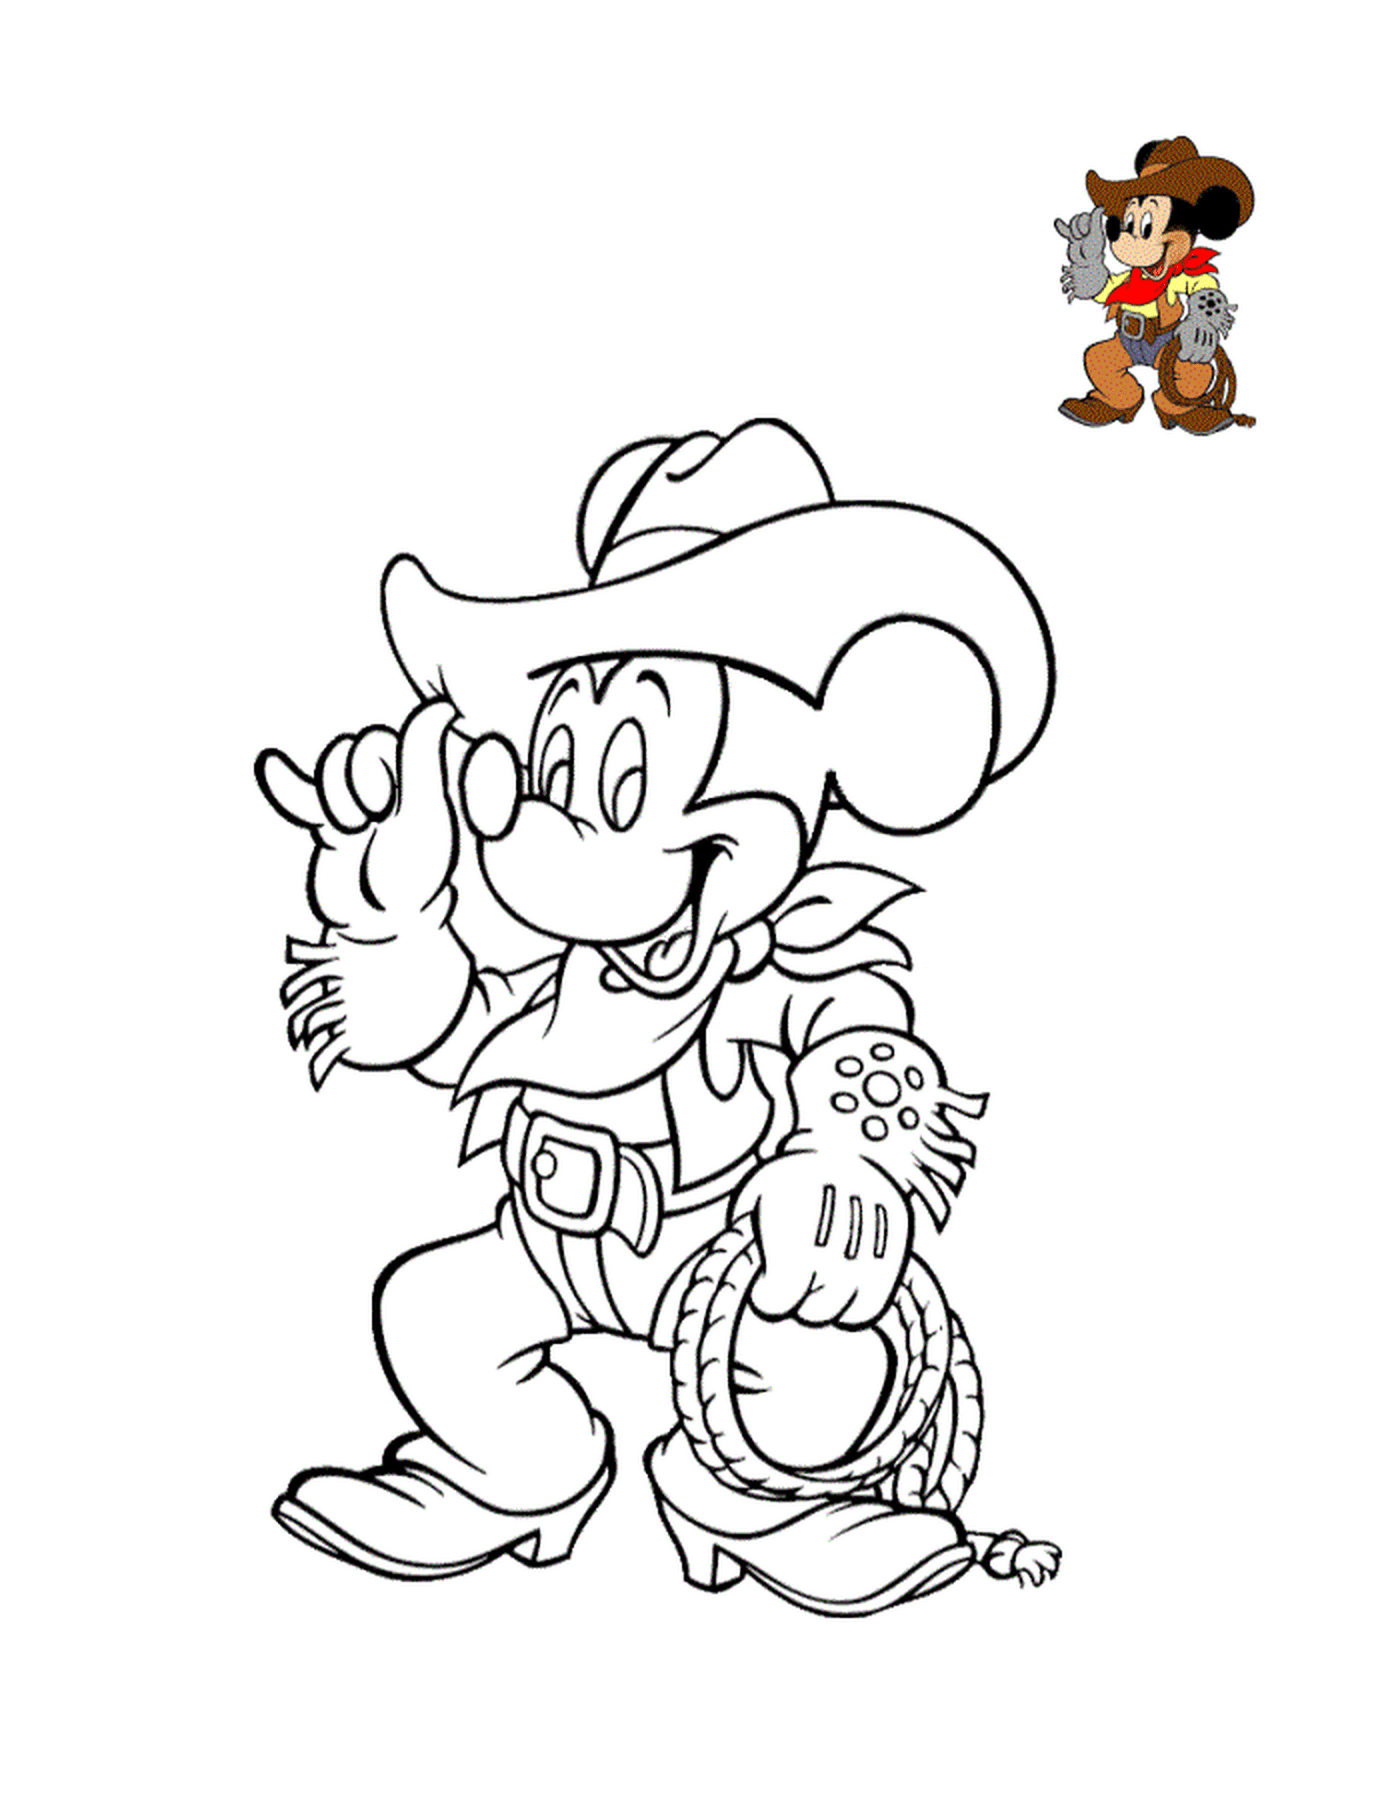  Mickey Maus mit Stiefeln und einem Cowboy Hut 